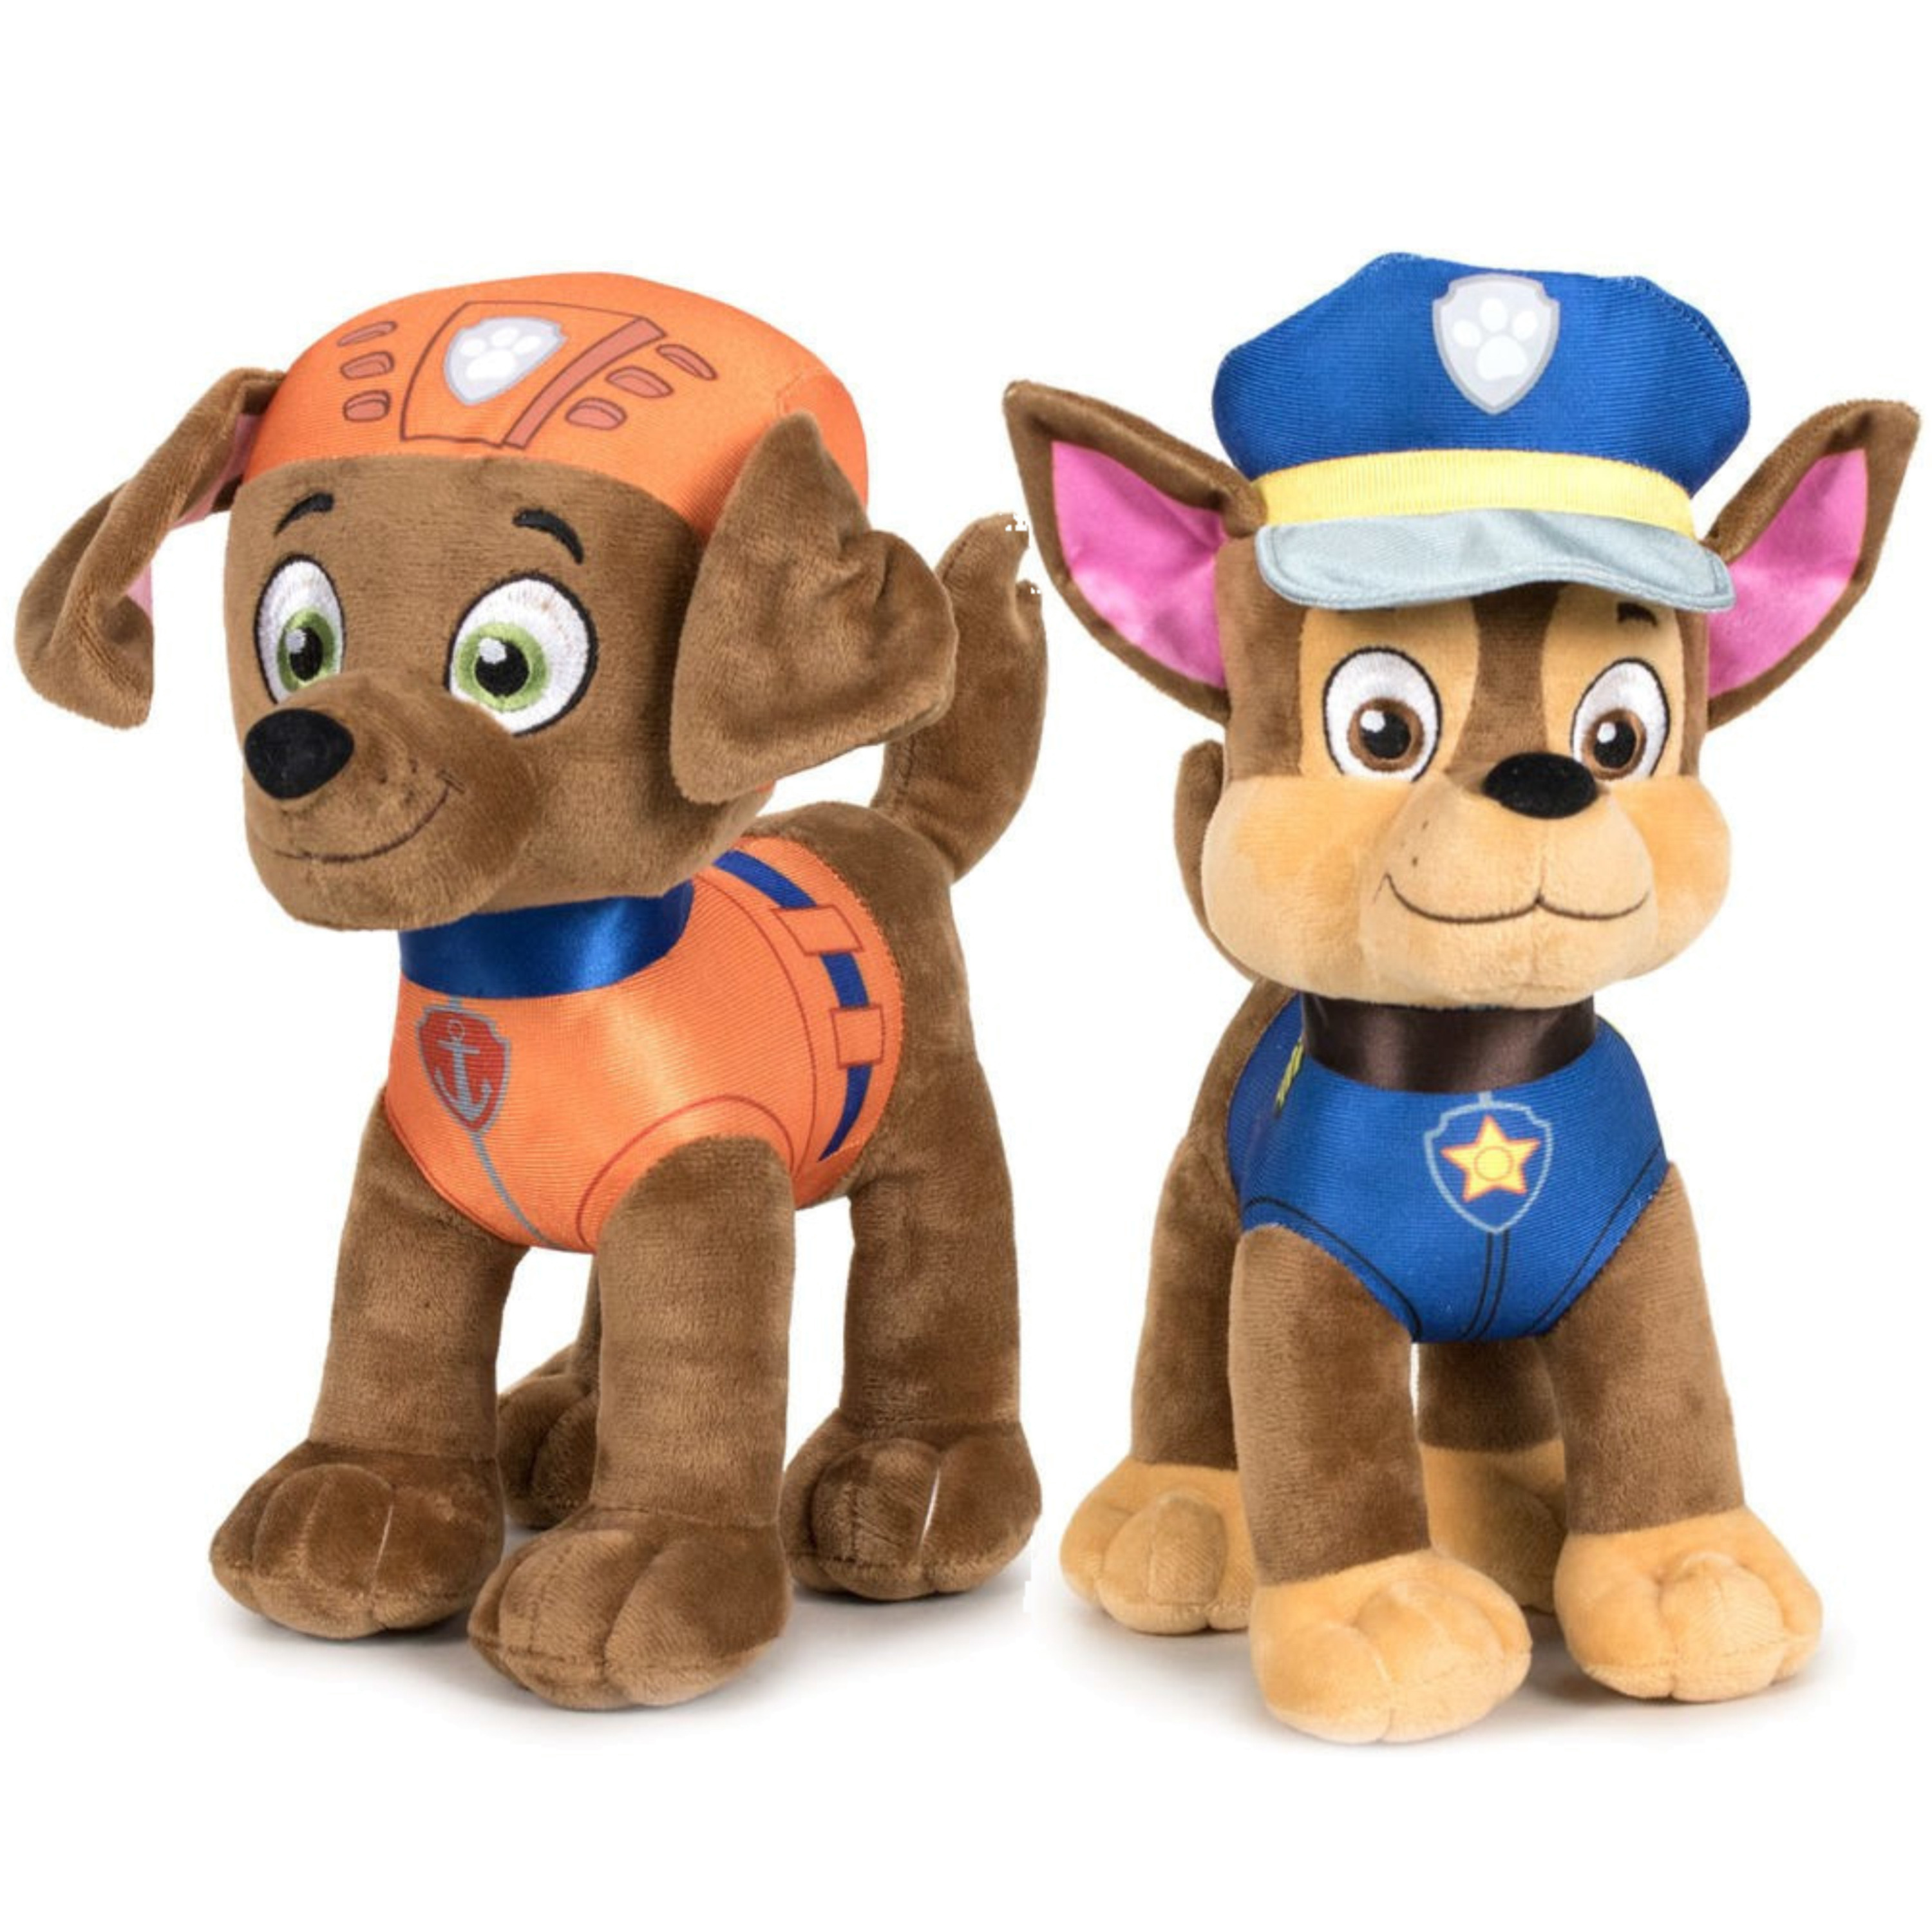 Paw Patrol figuren speelgoed knuffels set van 2x karakters Zuma en Chase 19 cm -